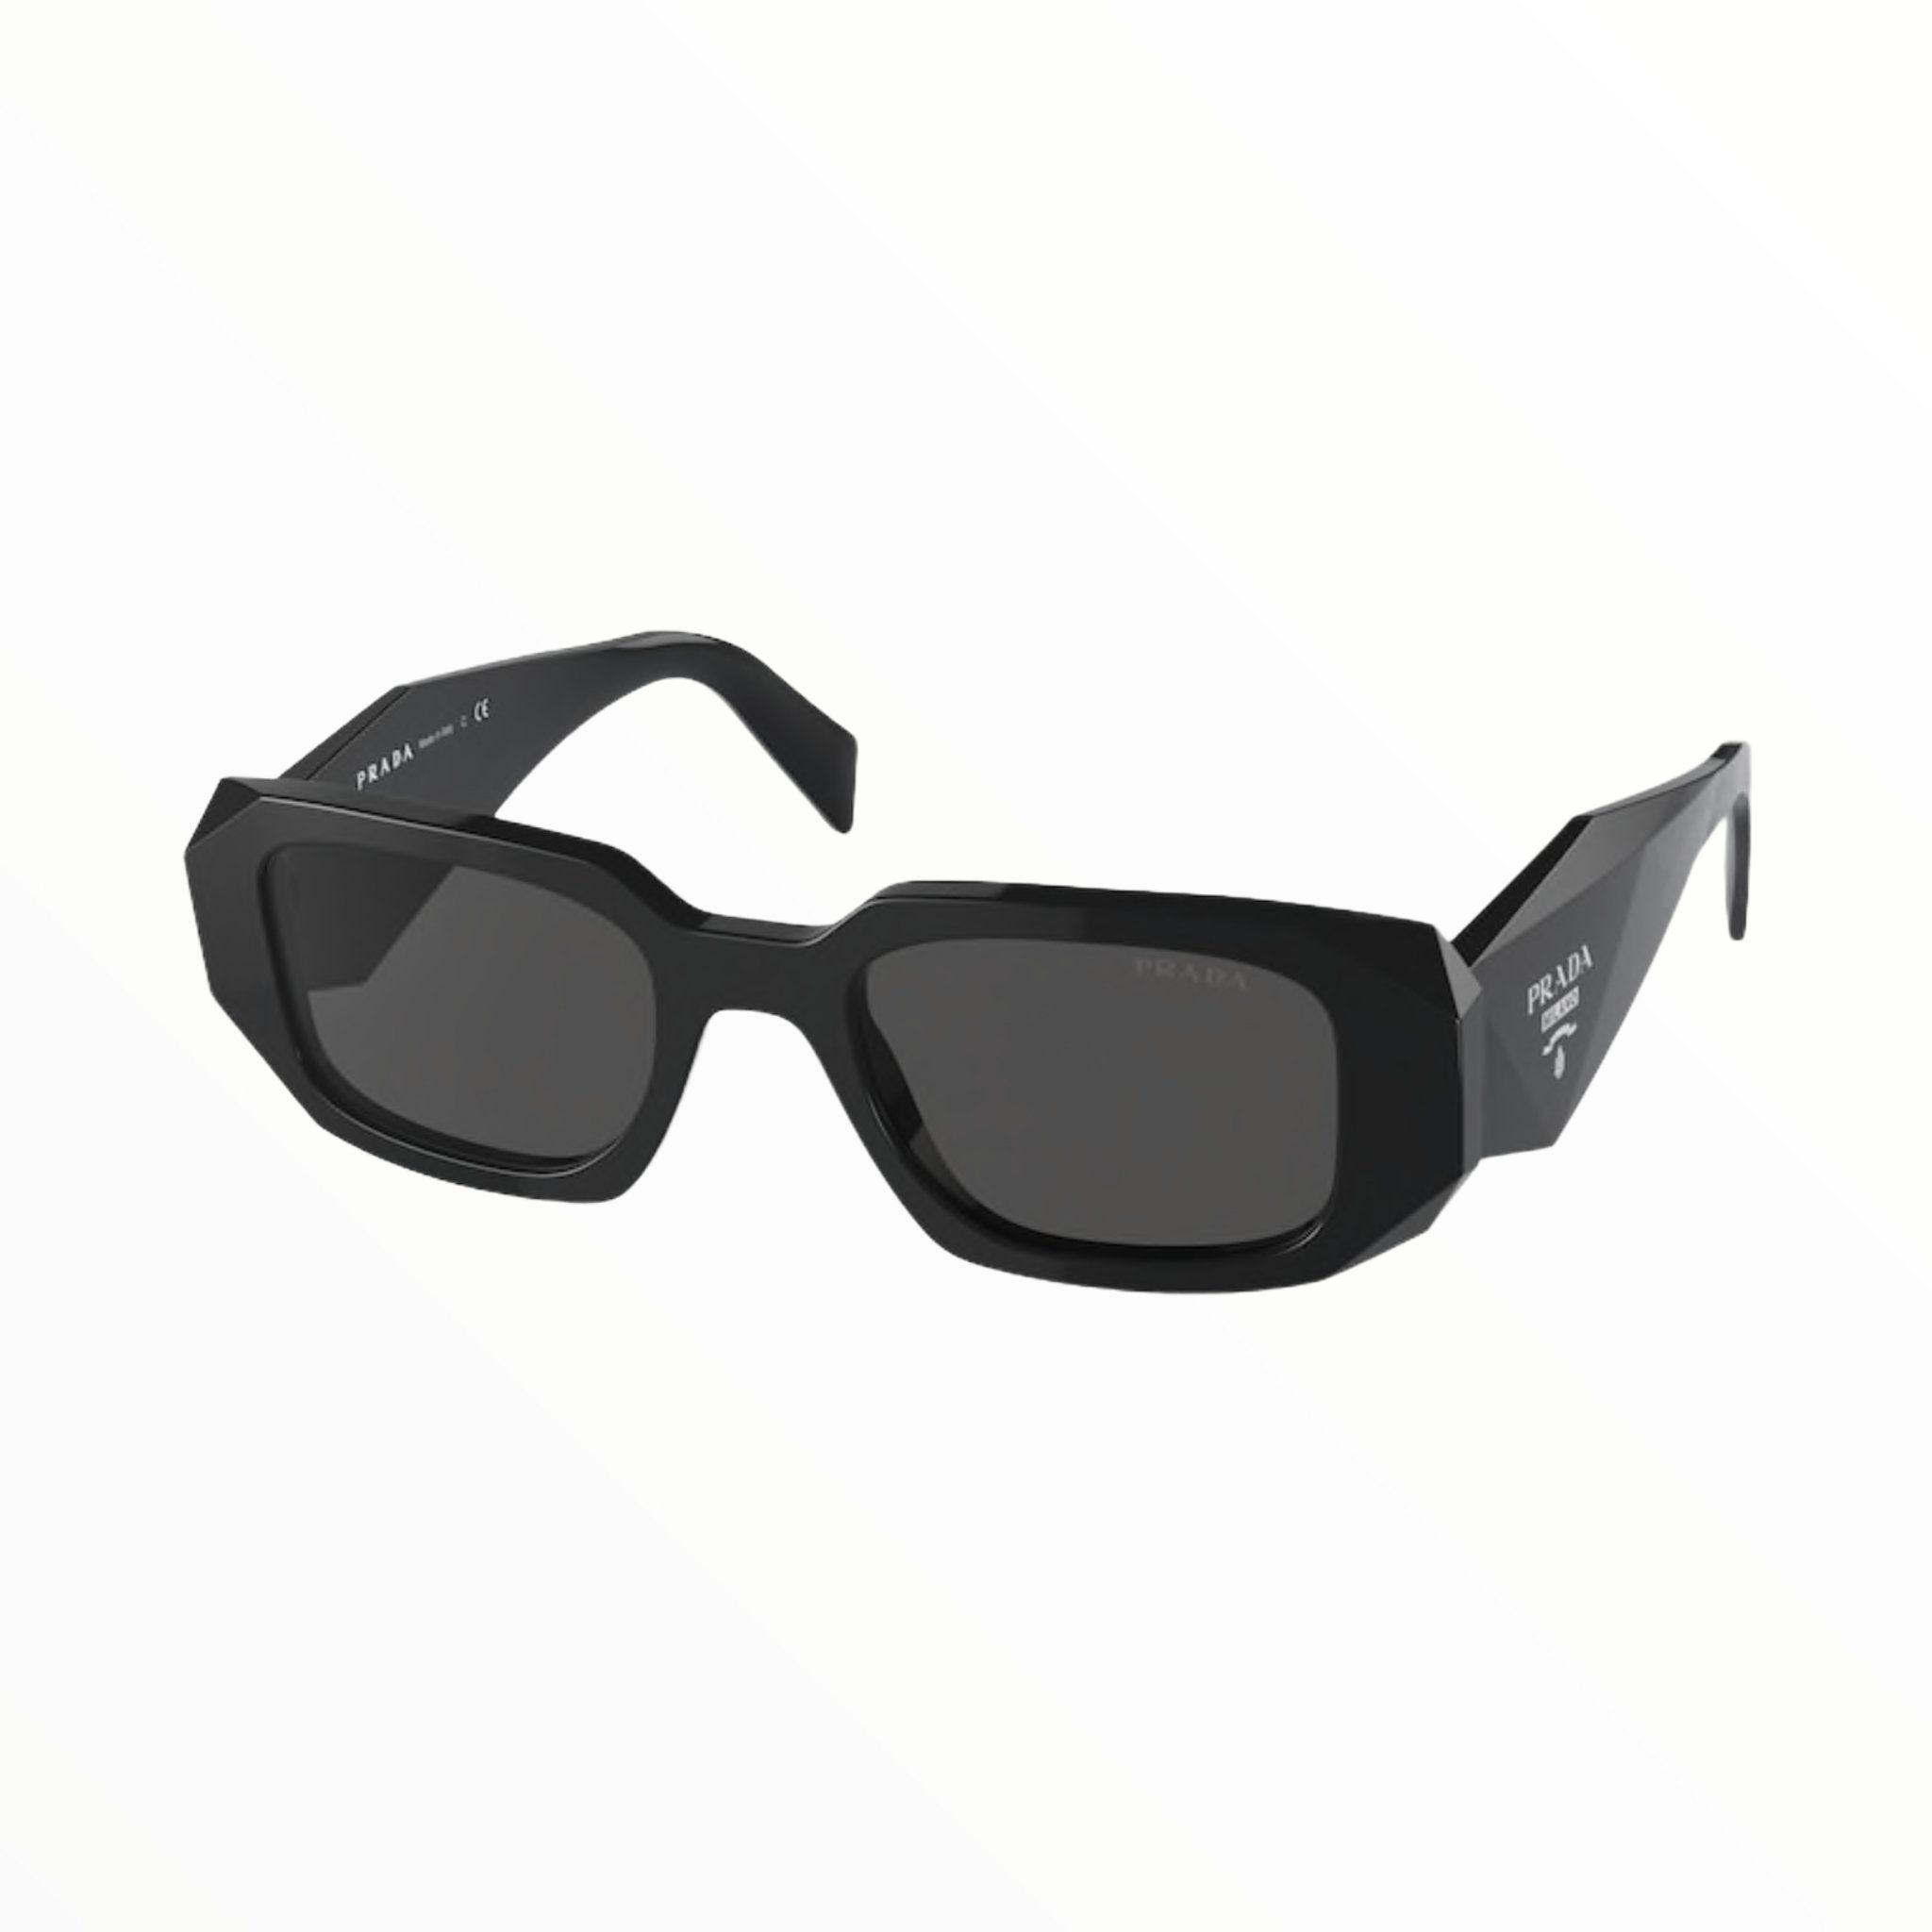 Prada - PRADA - Occhiale da sole 17WS SOLE - Occhiale da sole - Ottica Azzurro Capri